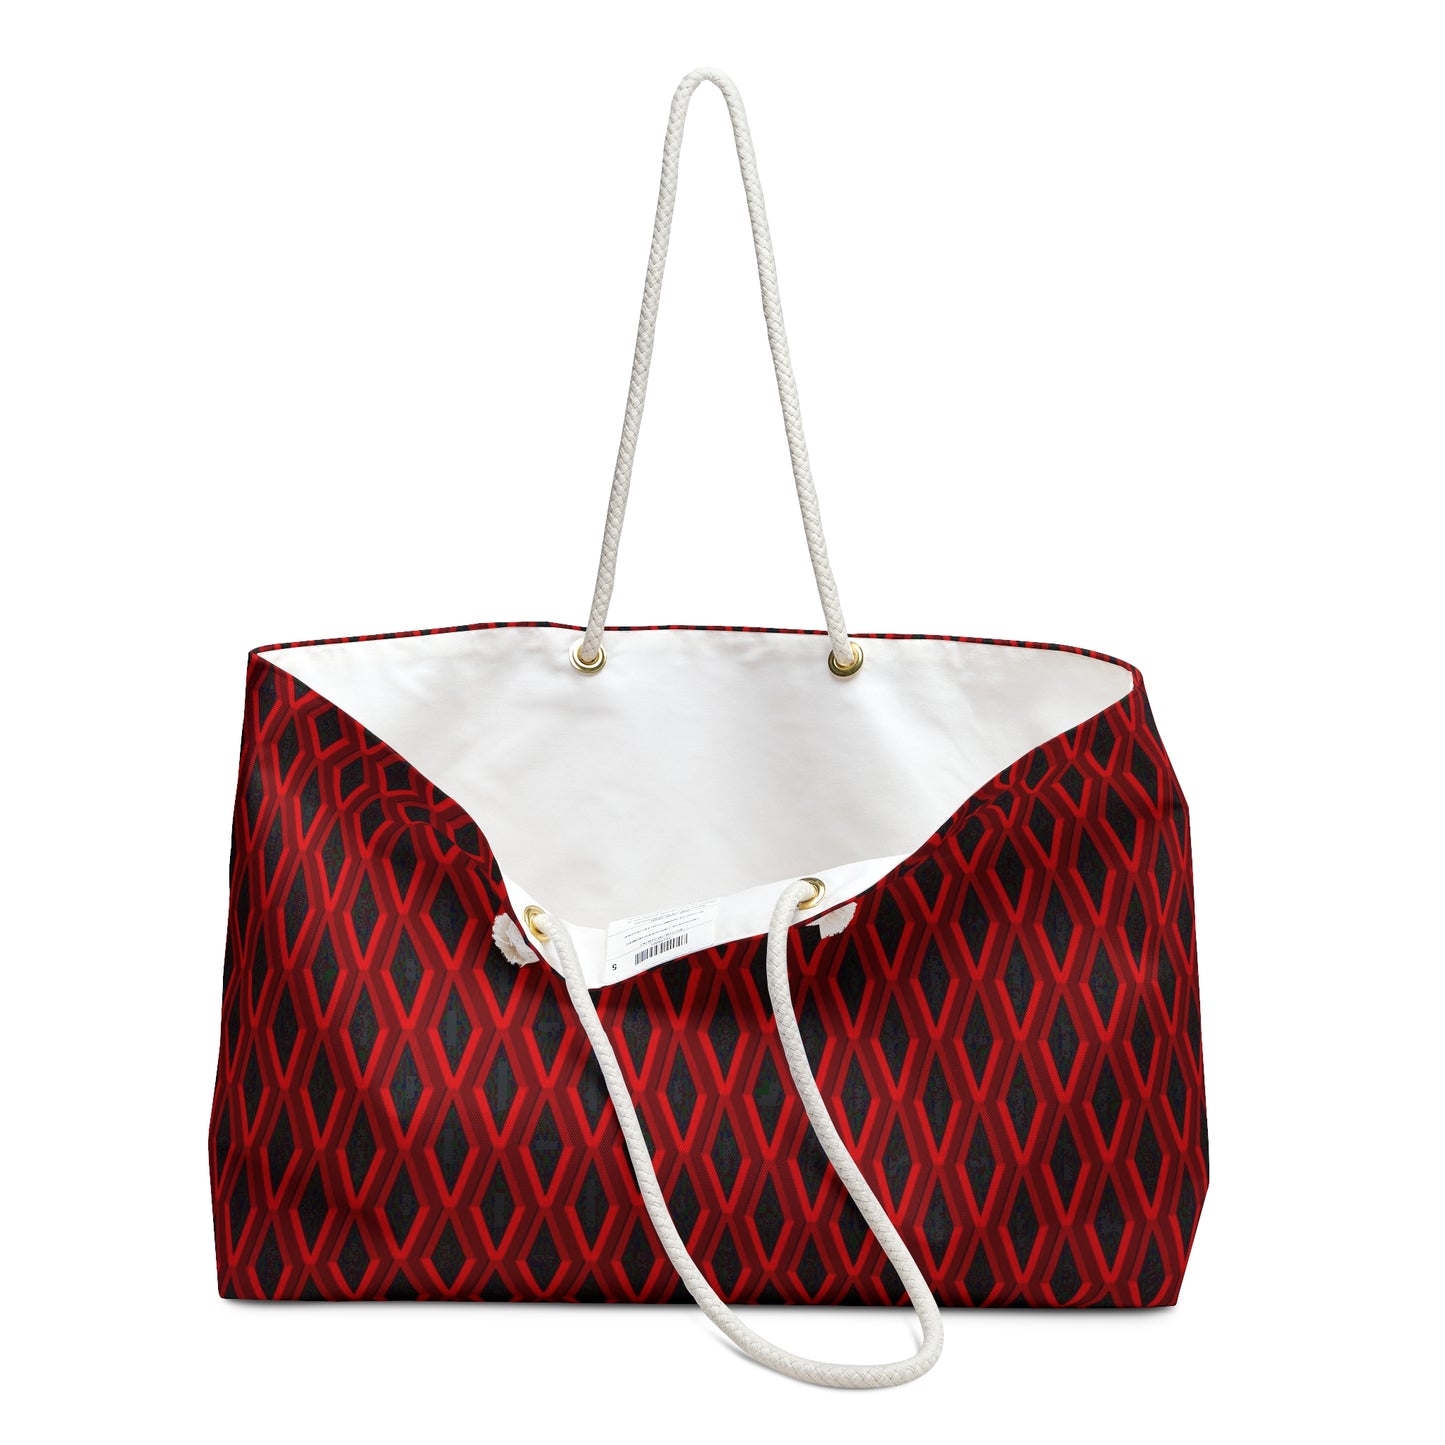 Diamond Geometric pattern5 - 000000 - Weekender Bag